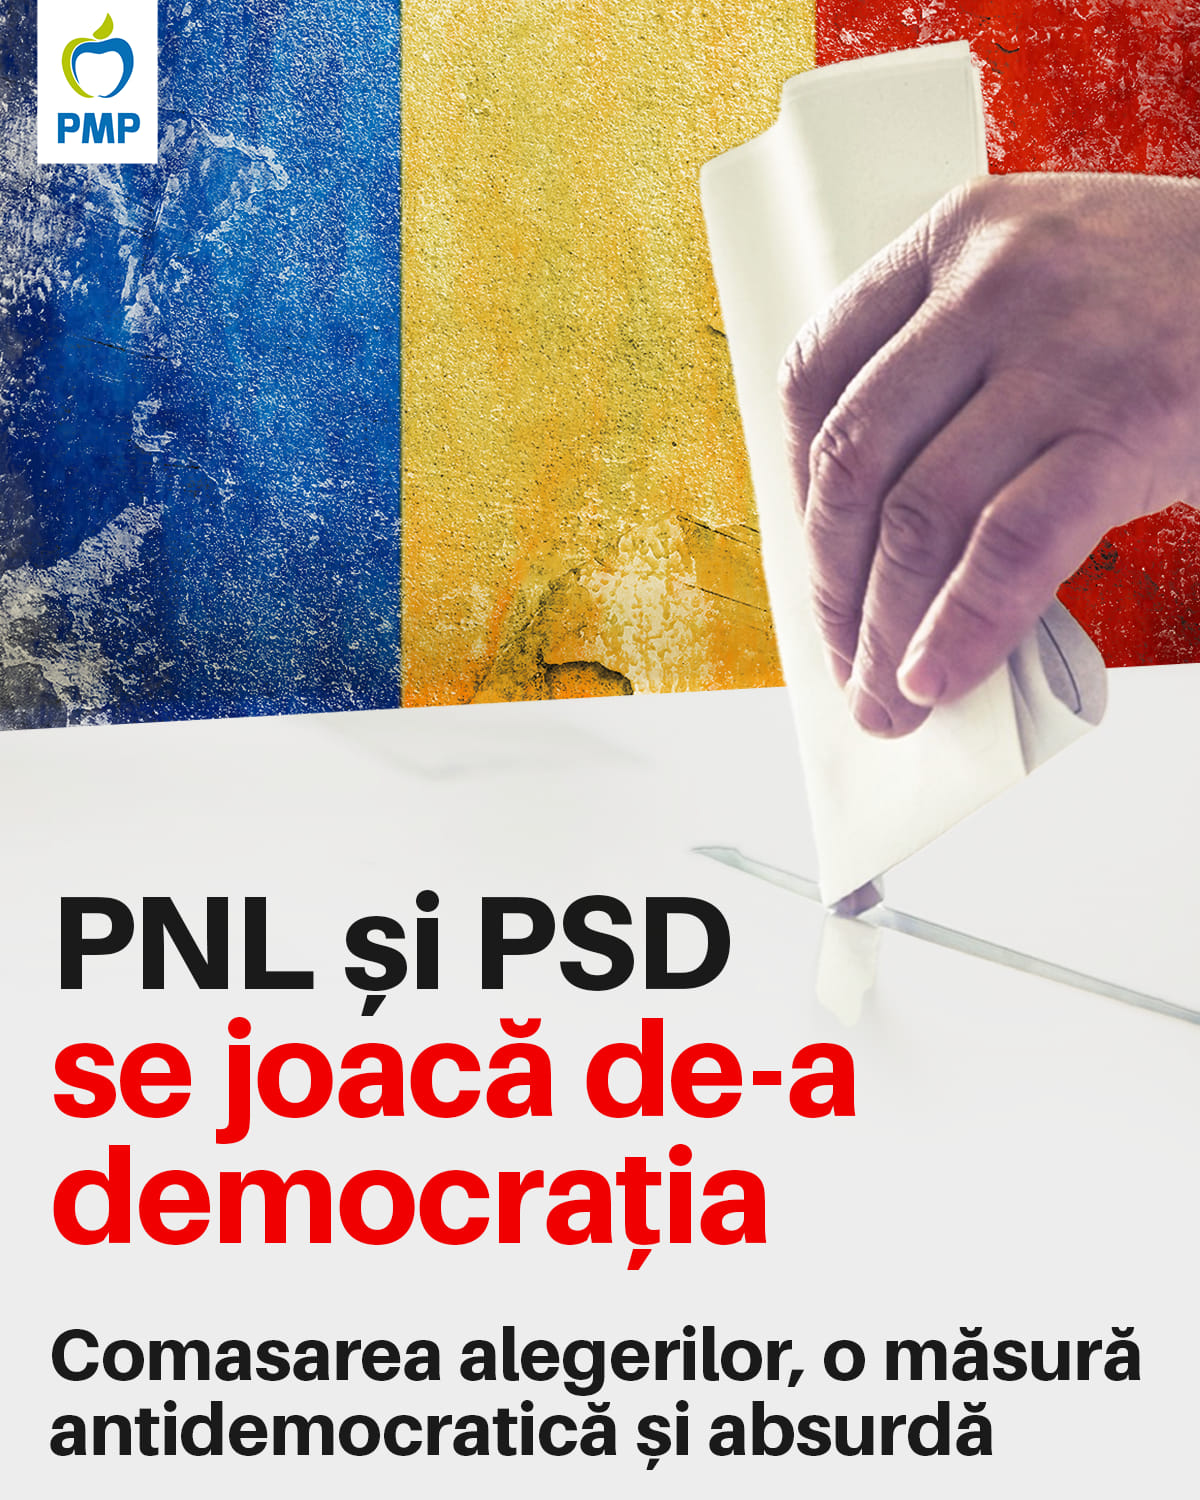 PSD și PNL schimbă regulile în timpul jocului, în mod nedemocratic și periculos